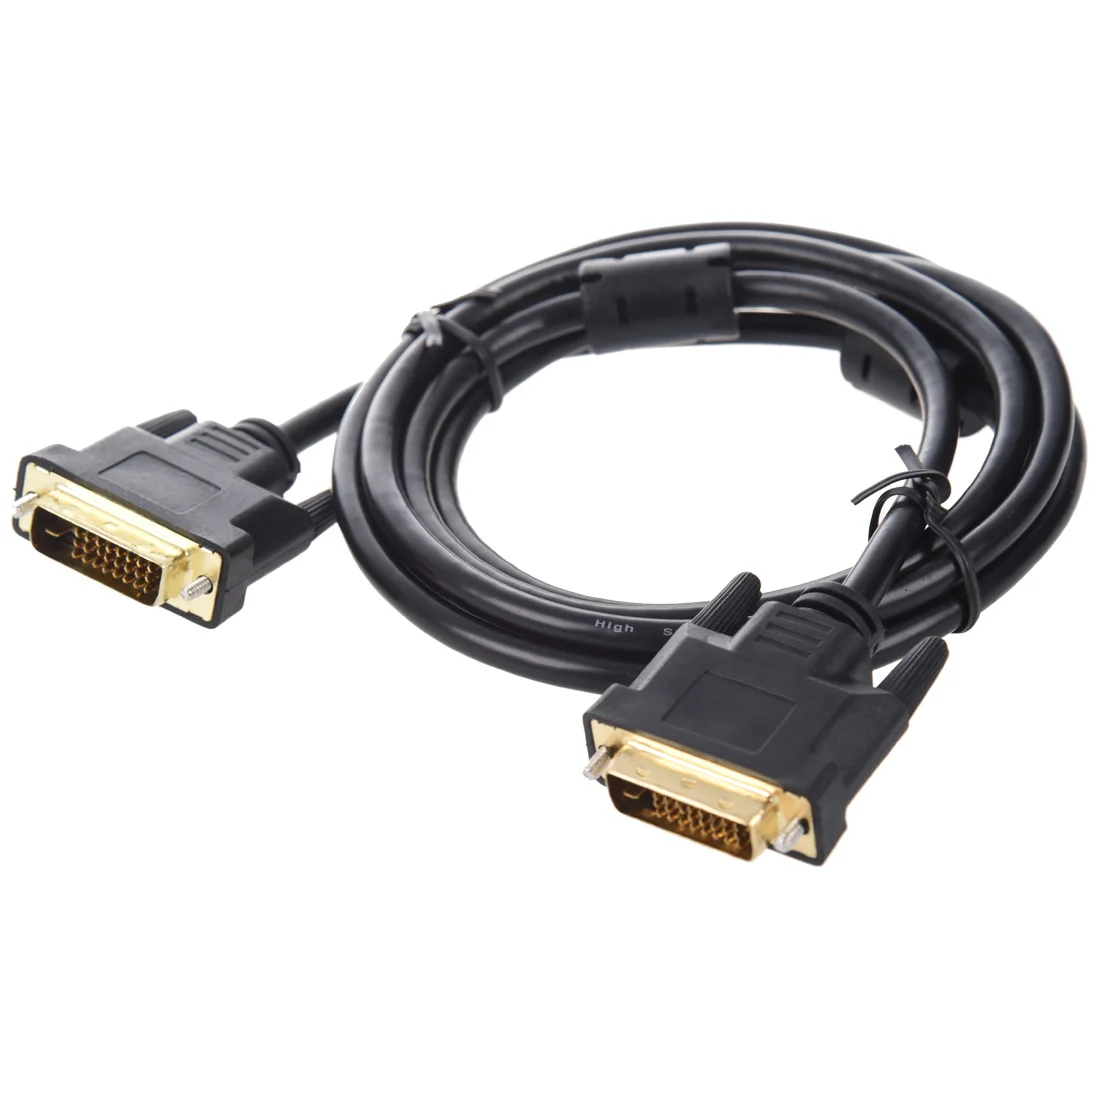 HFES Давид ММ6 кабель для монитора DVI-I Dual Link 2x DVI-I выпуклый 1,8 м черный